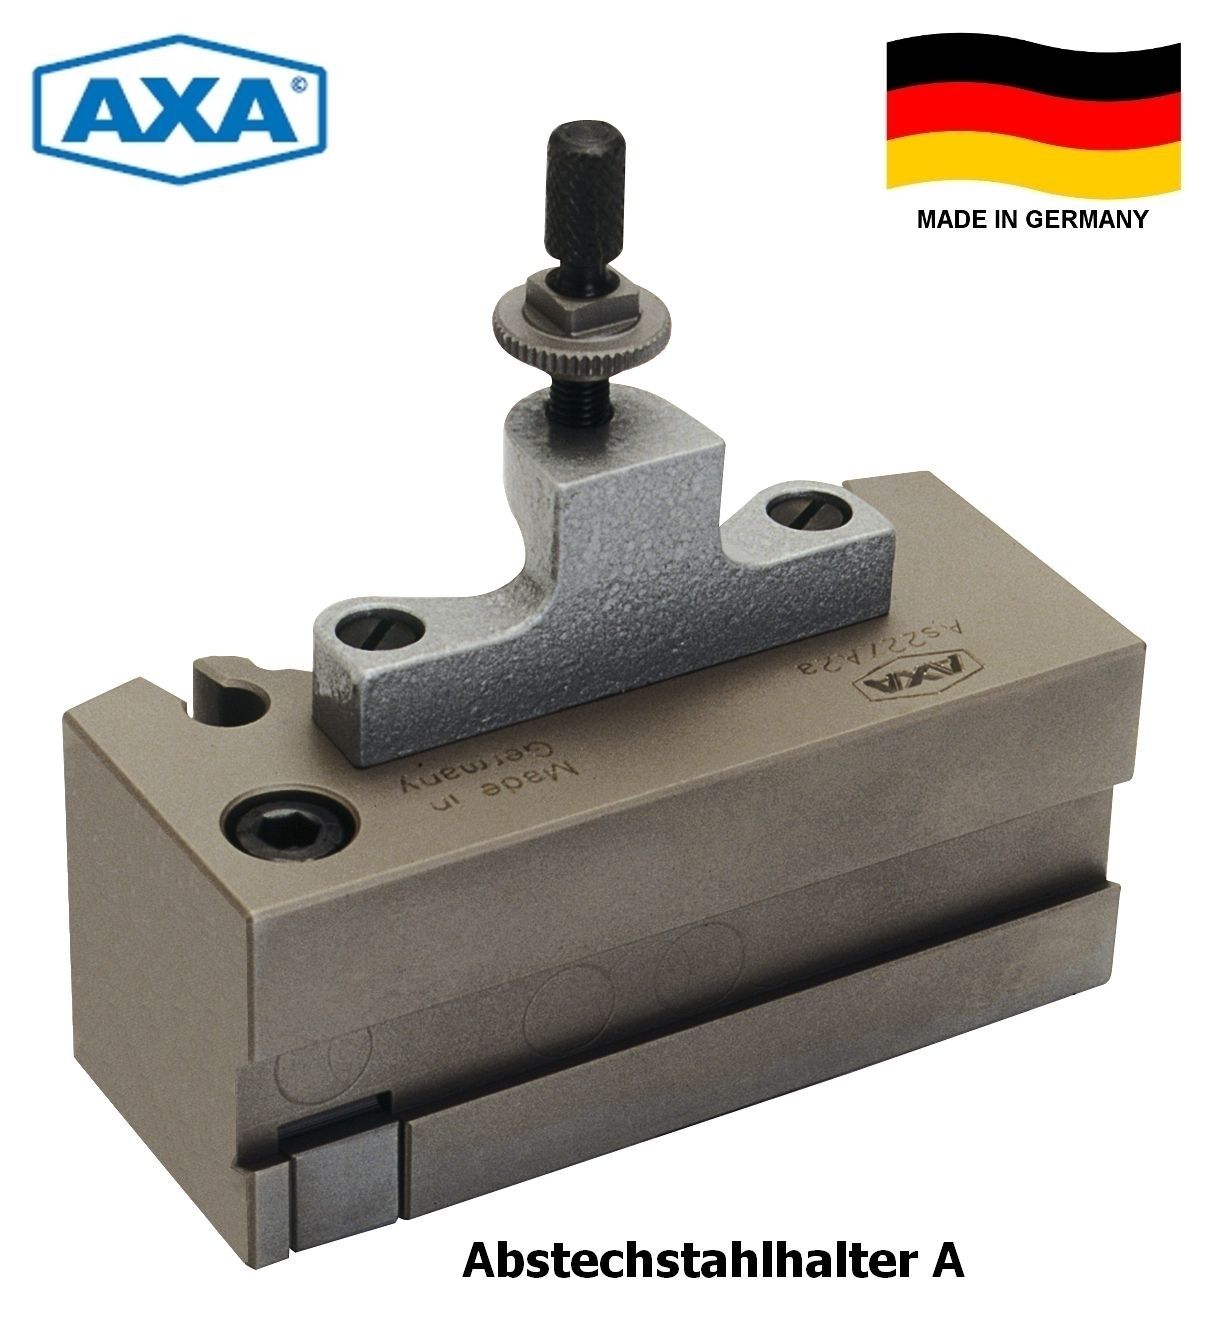 AXA Schnellwechsel-Abstechhalter Aa | As00 - A00